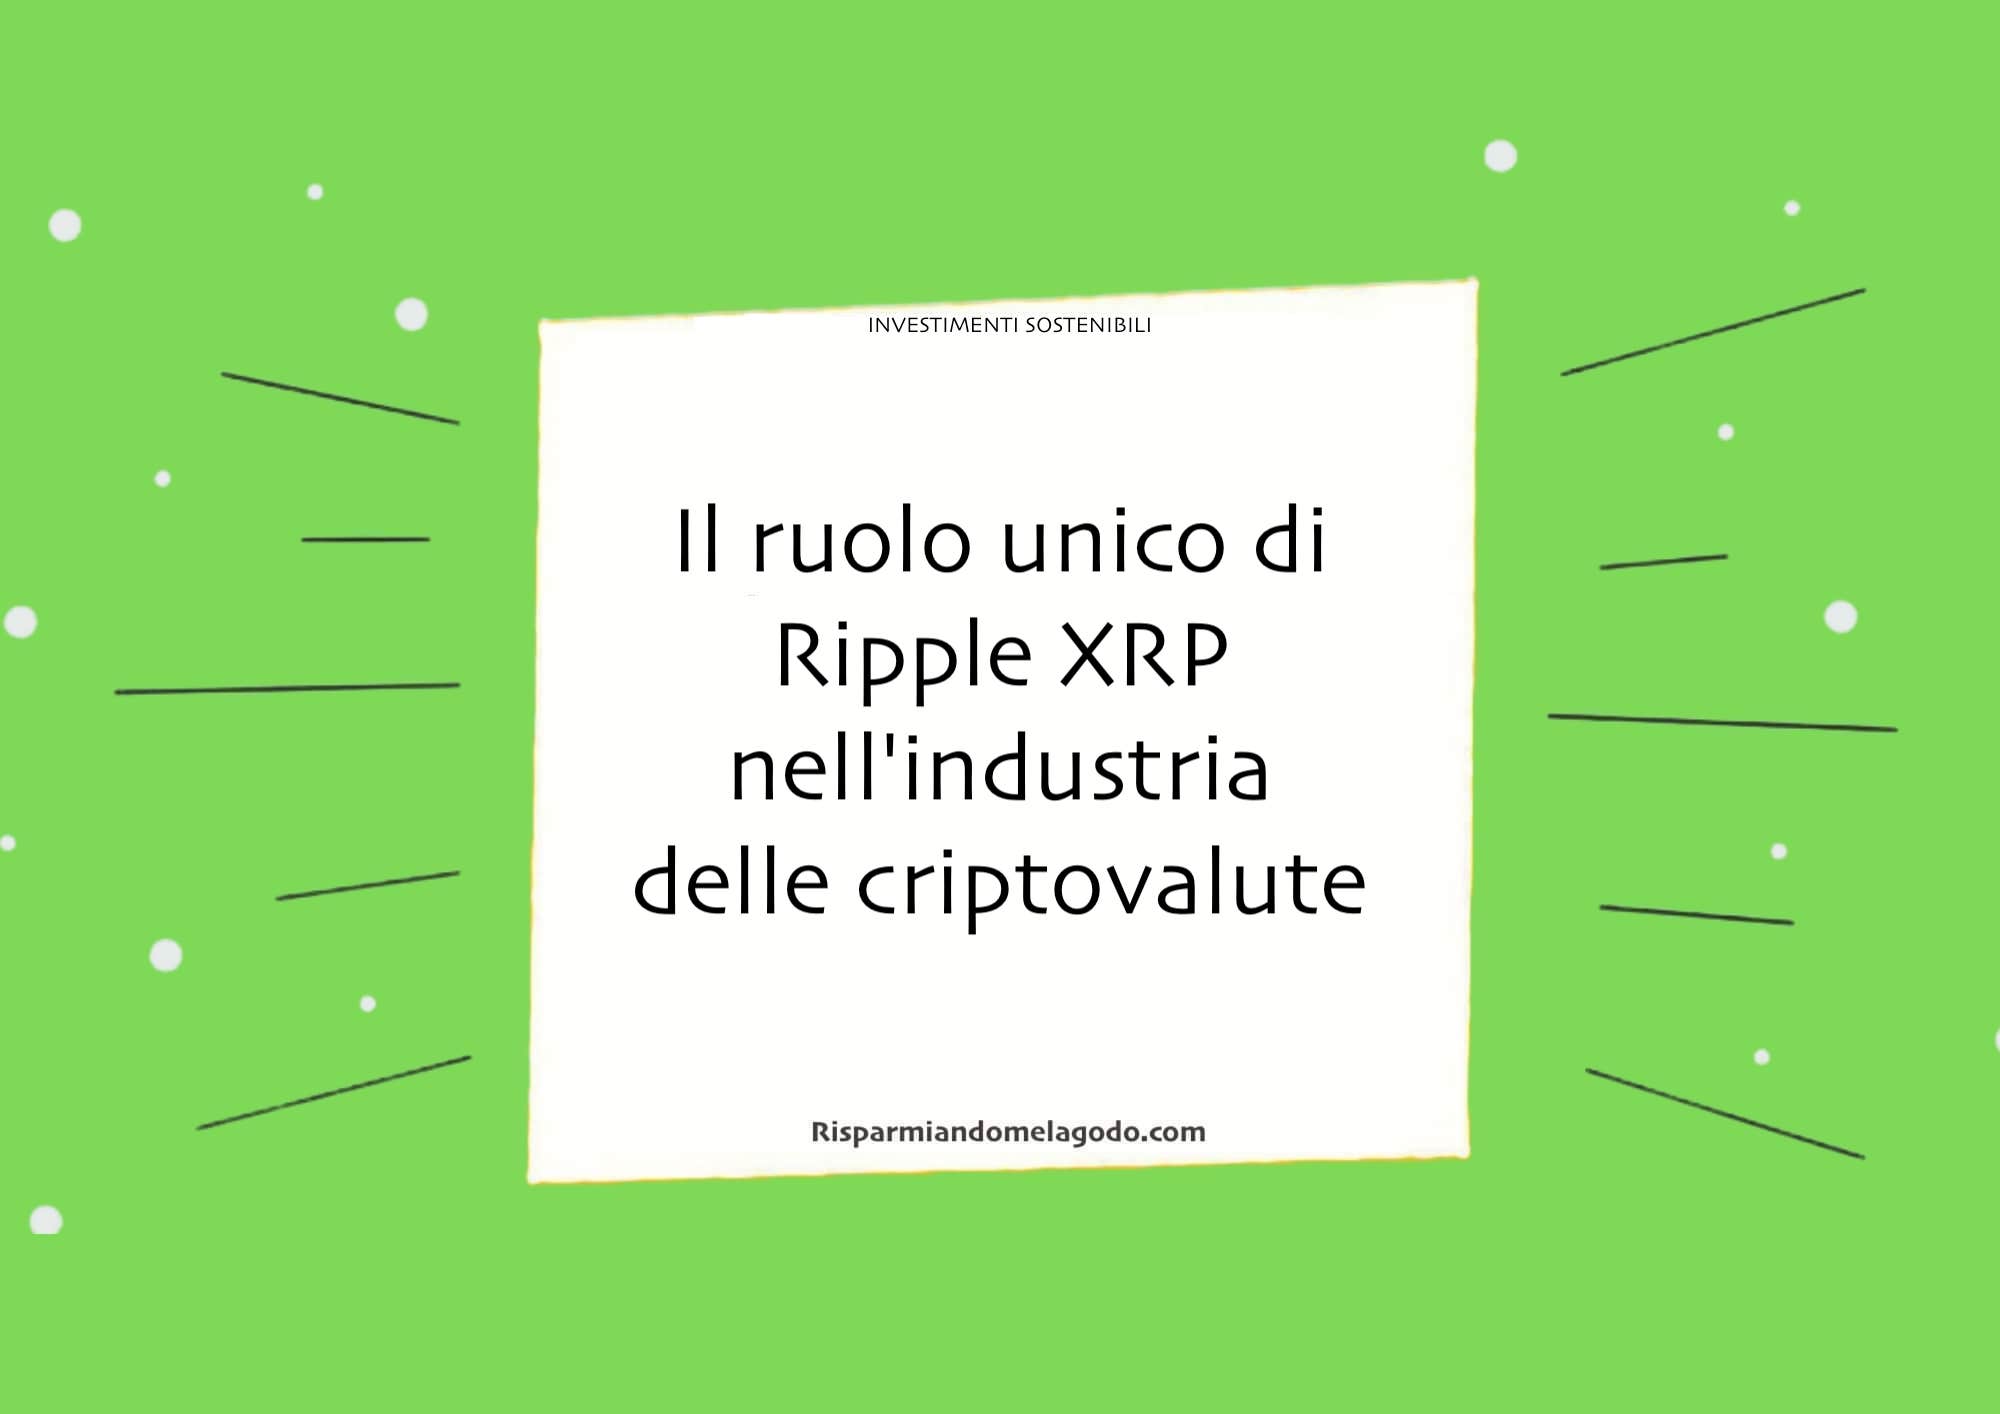 Il ruolo unico di Ripple XRP nell'industria delle criptovalute